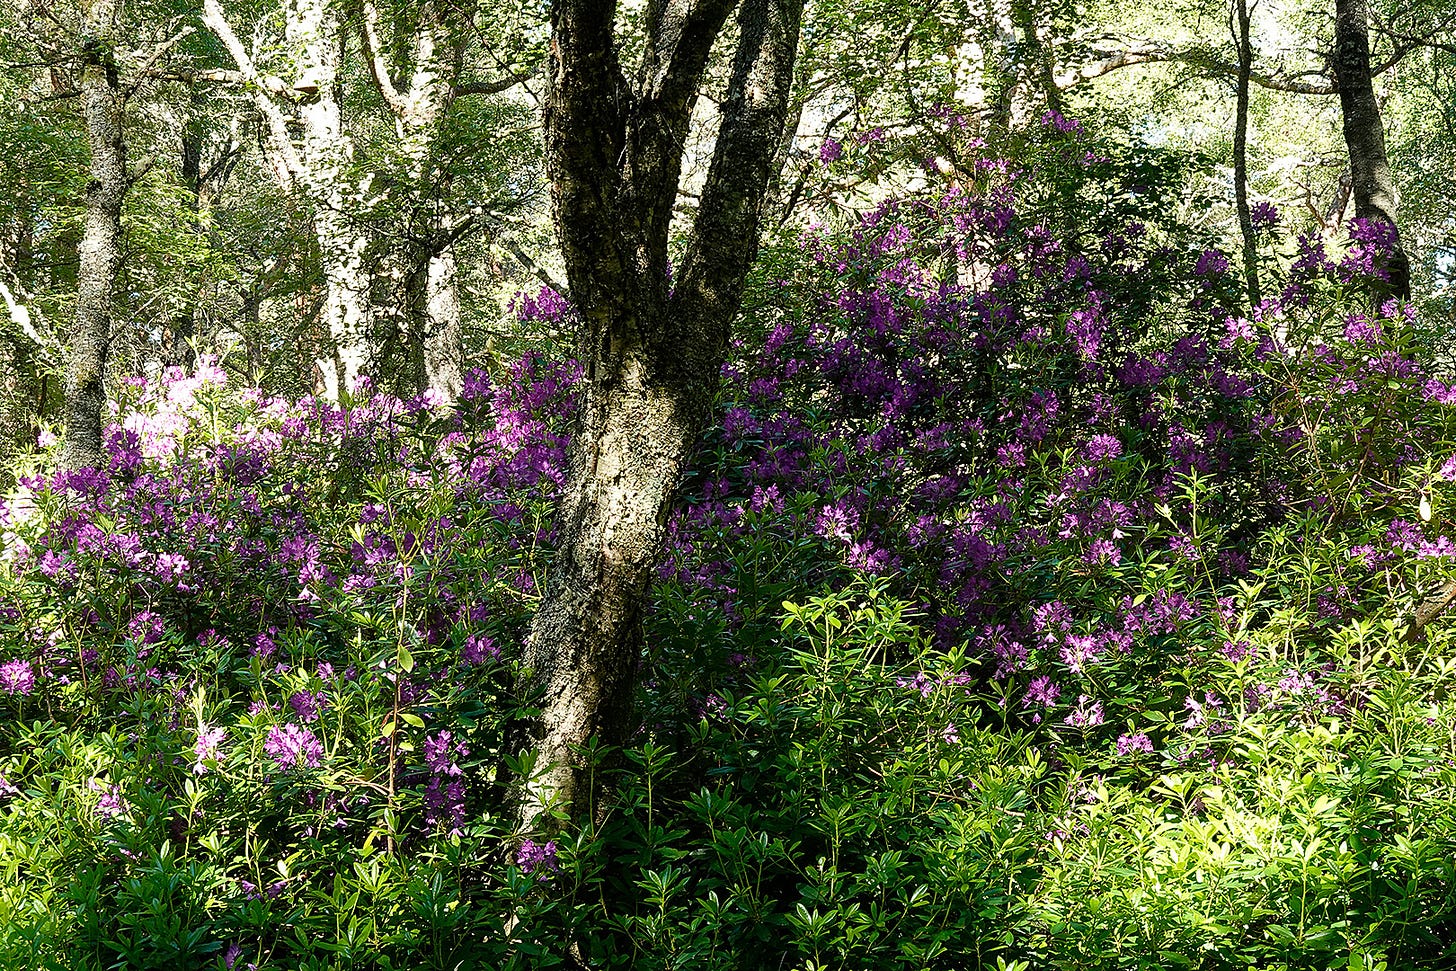 Invasive magenta Rhododendron ponticum flowers in an Aberdeenshire birch and pine wood